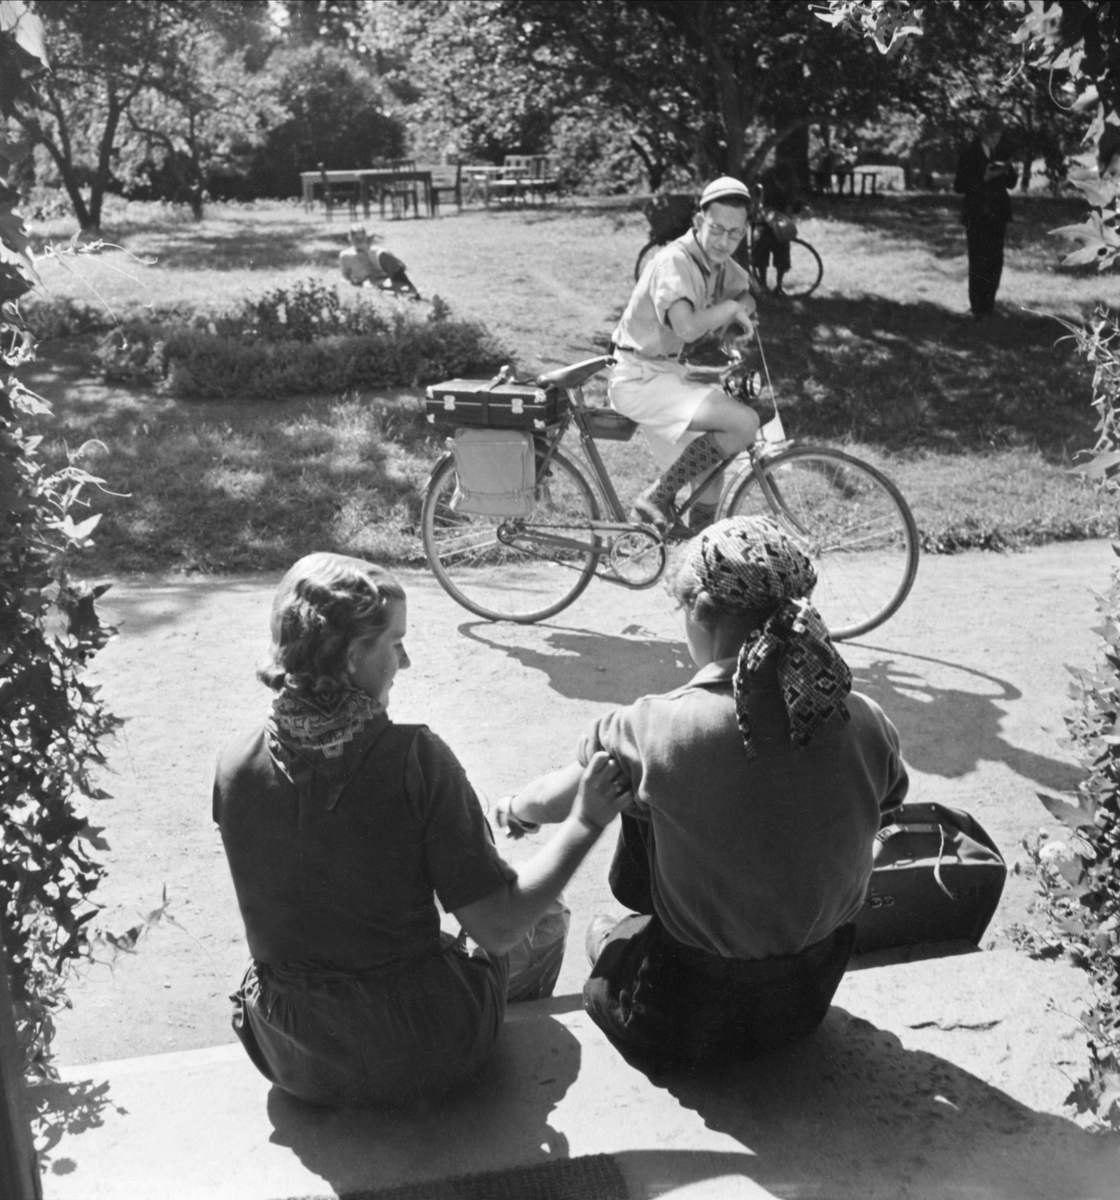 Ungdomar vilar under cykelfärd. Två flckor sitter på en trappa, en ung man står med cykel på vägen framför dem.